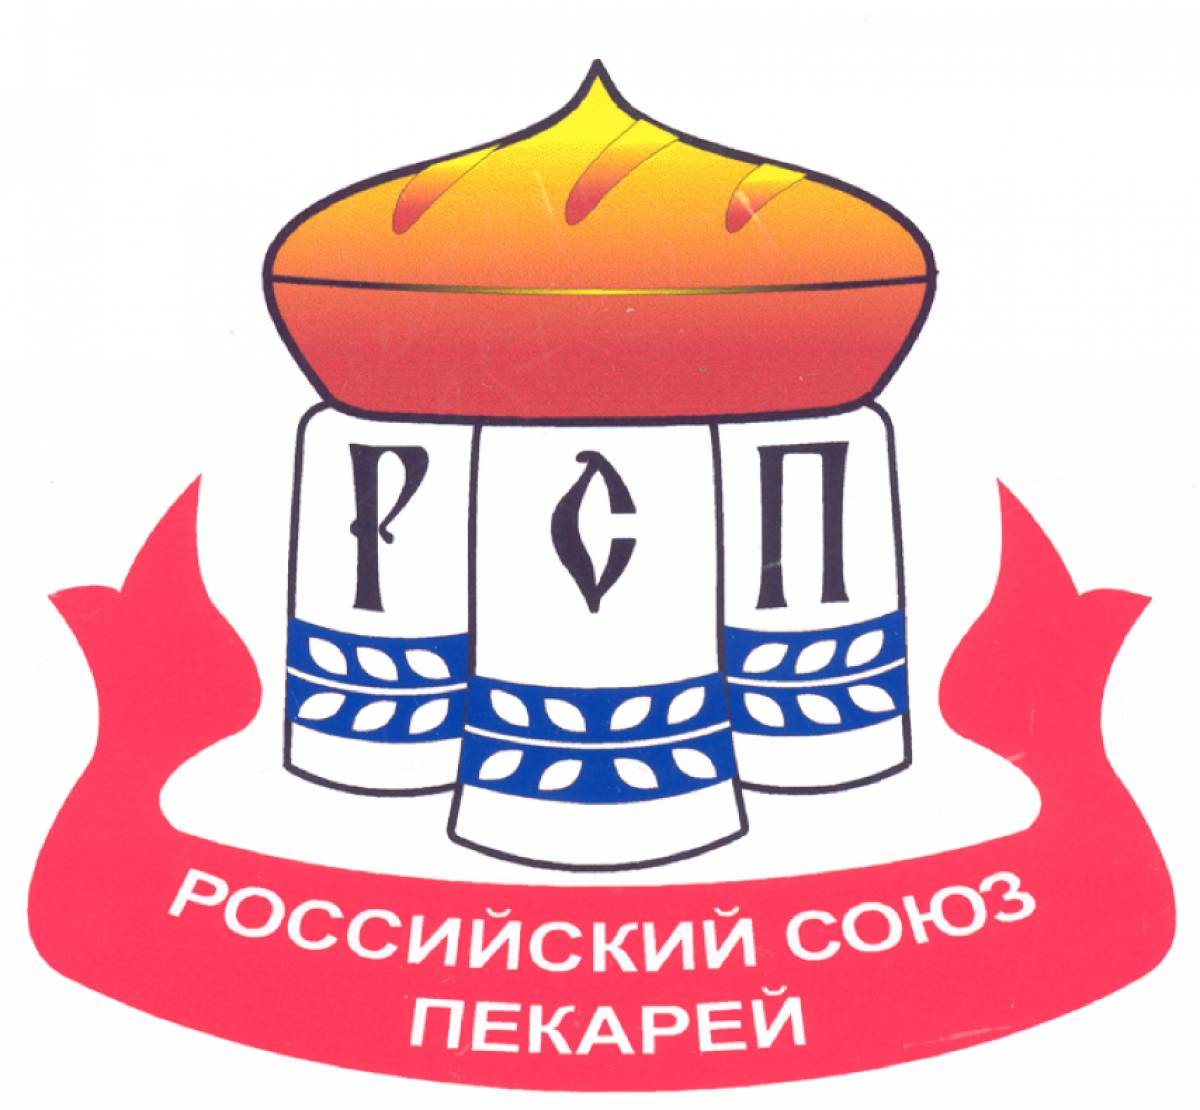 Одно из важных направлений работы – создание региональных отделений Российского союза пекарей.